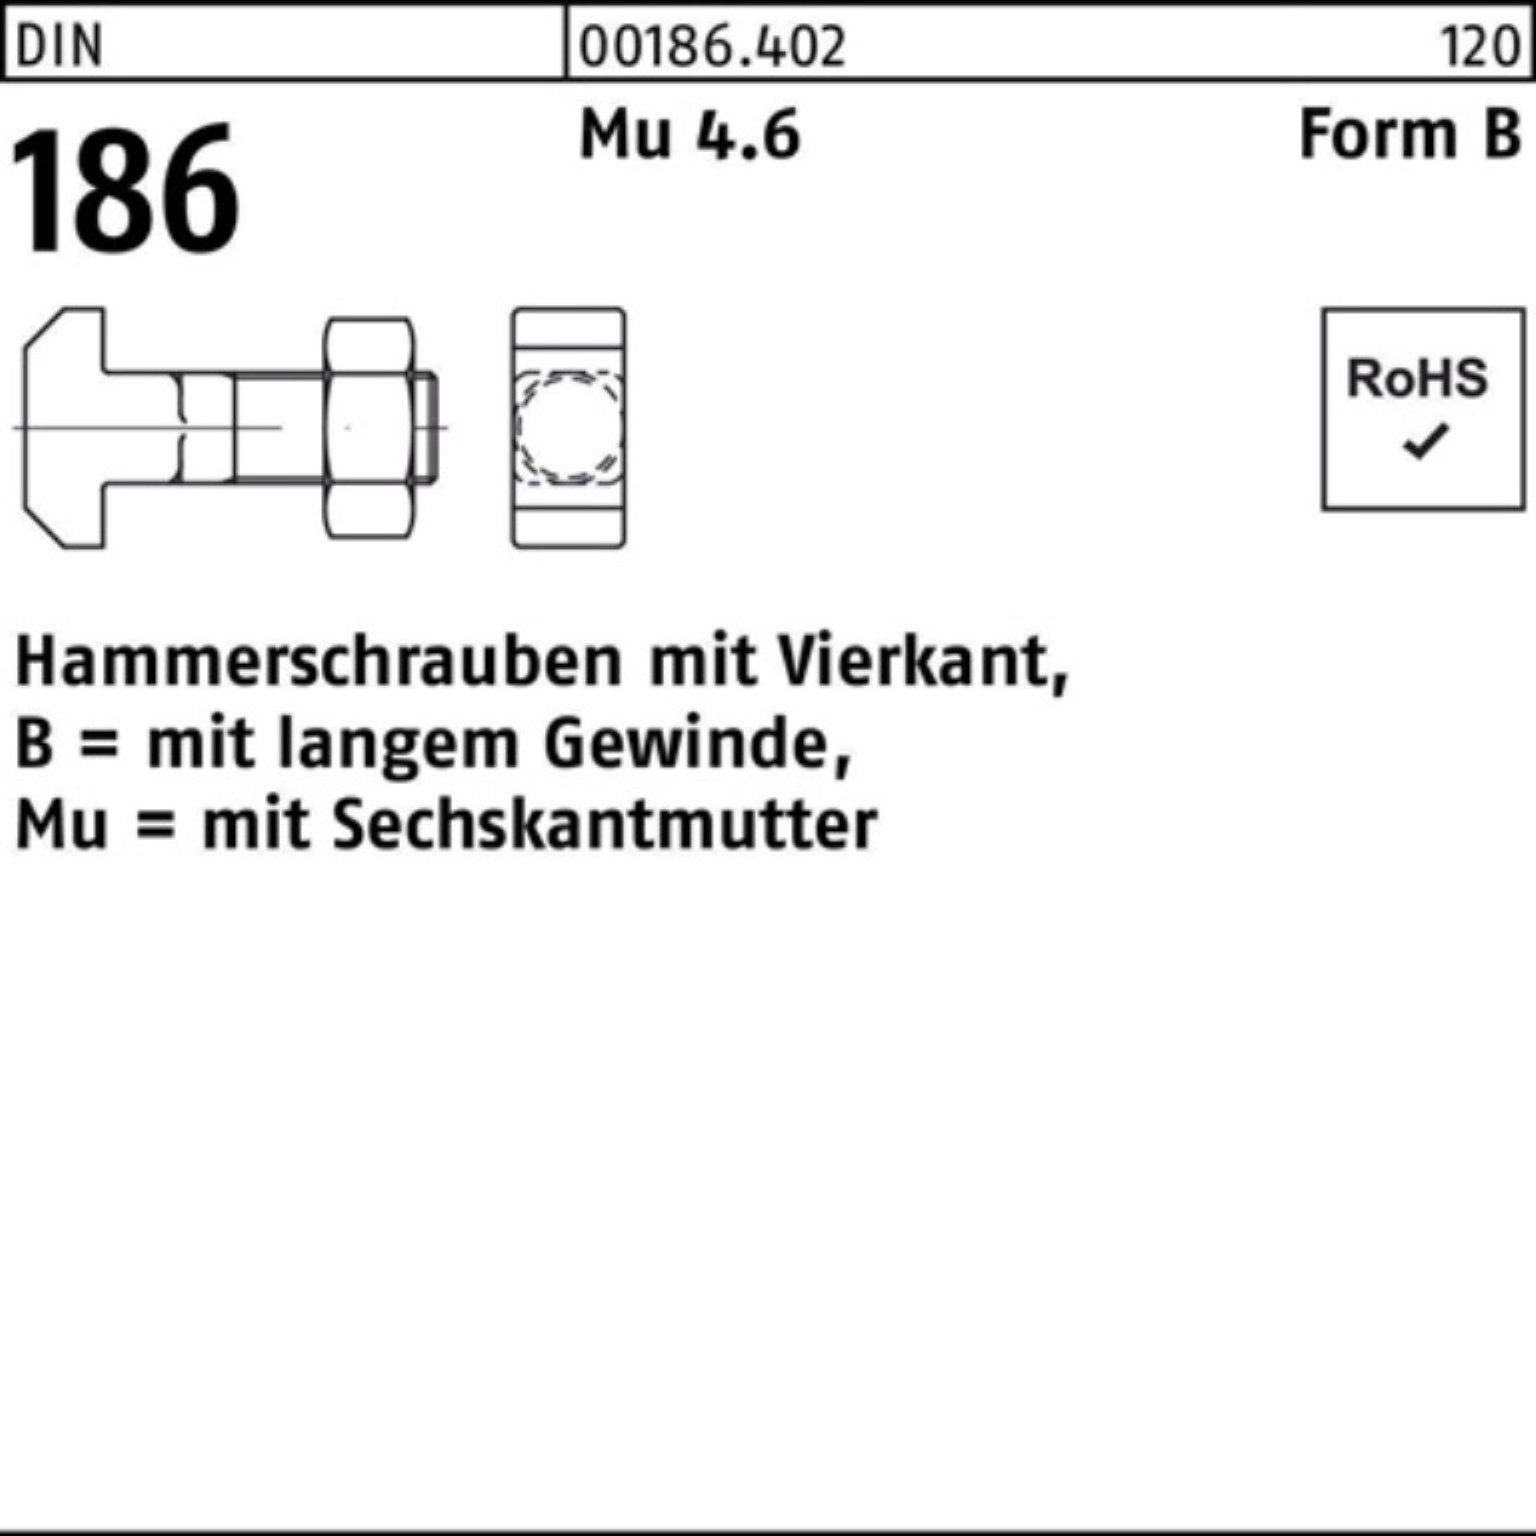 Reyher Schraube 100er FormB Hammerschraube Pack 6-ktmutter 100 DIN BM 186 Vierkant 10x